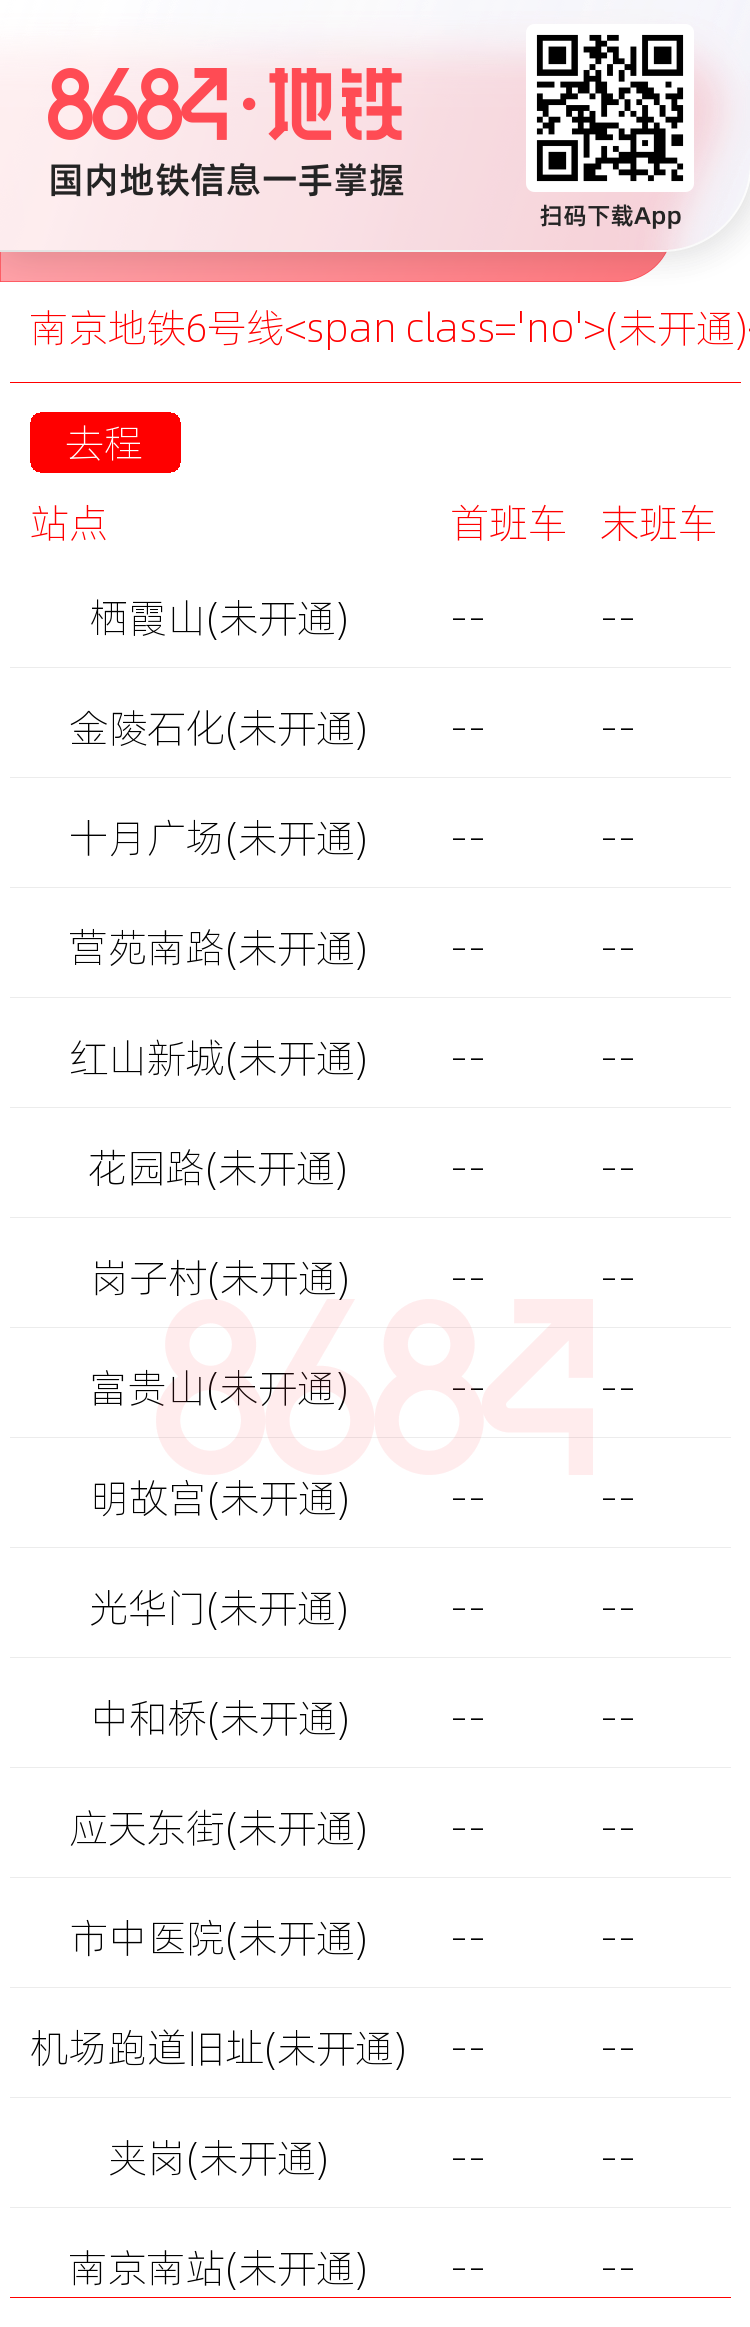 南京地铁6号线<span class='no'>(未开通)</span>运营时间表